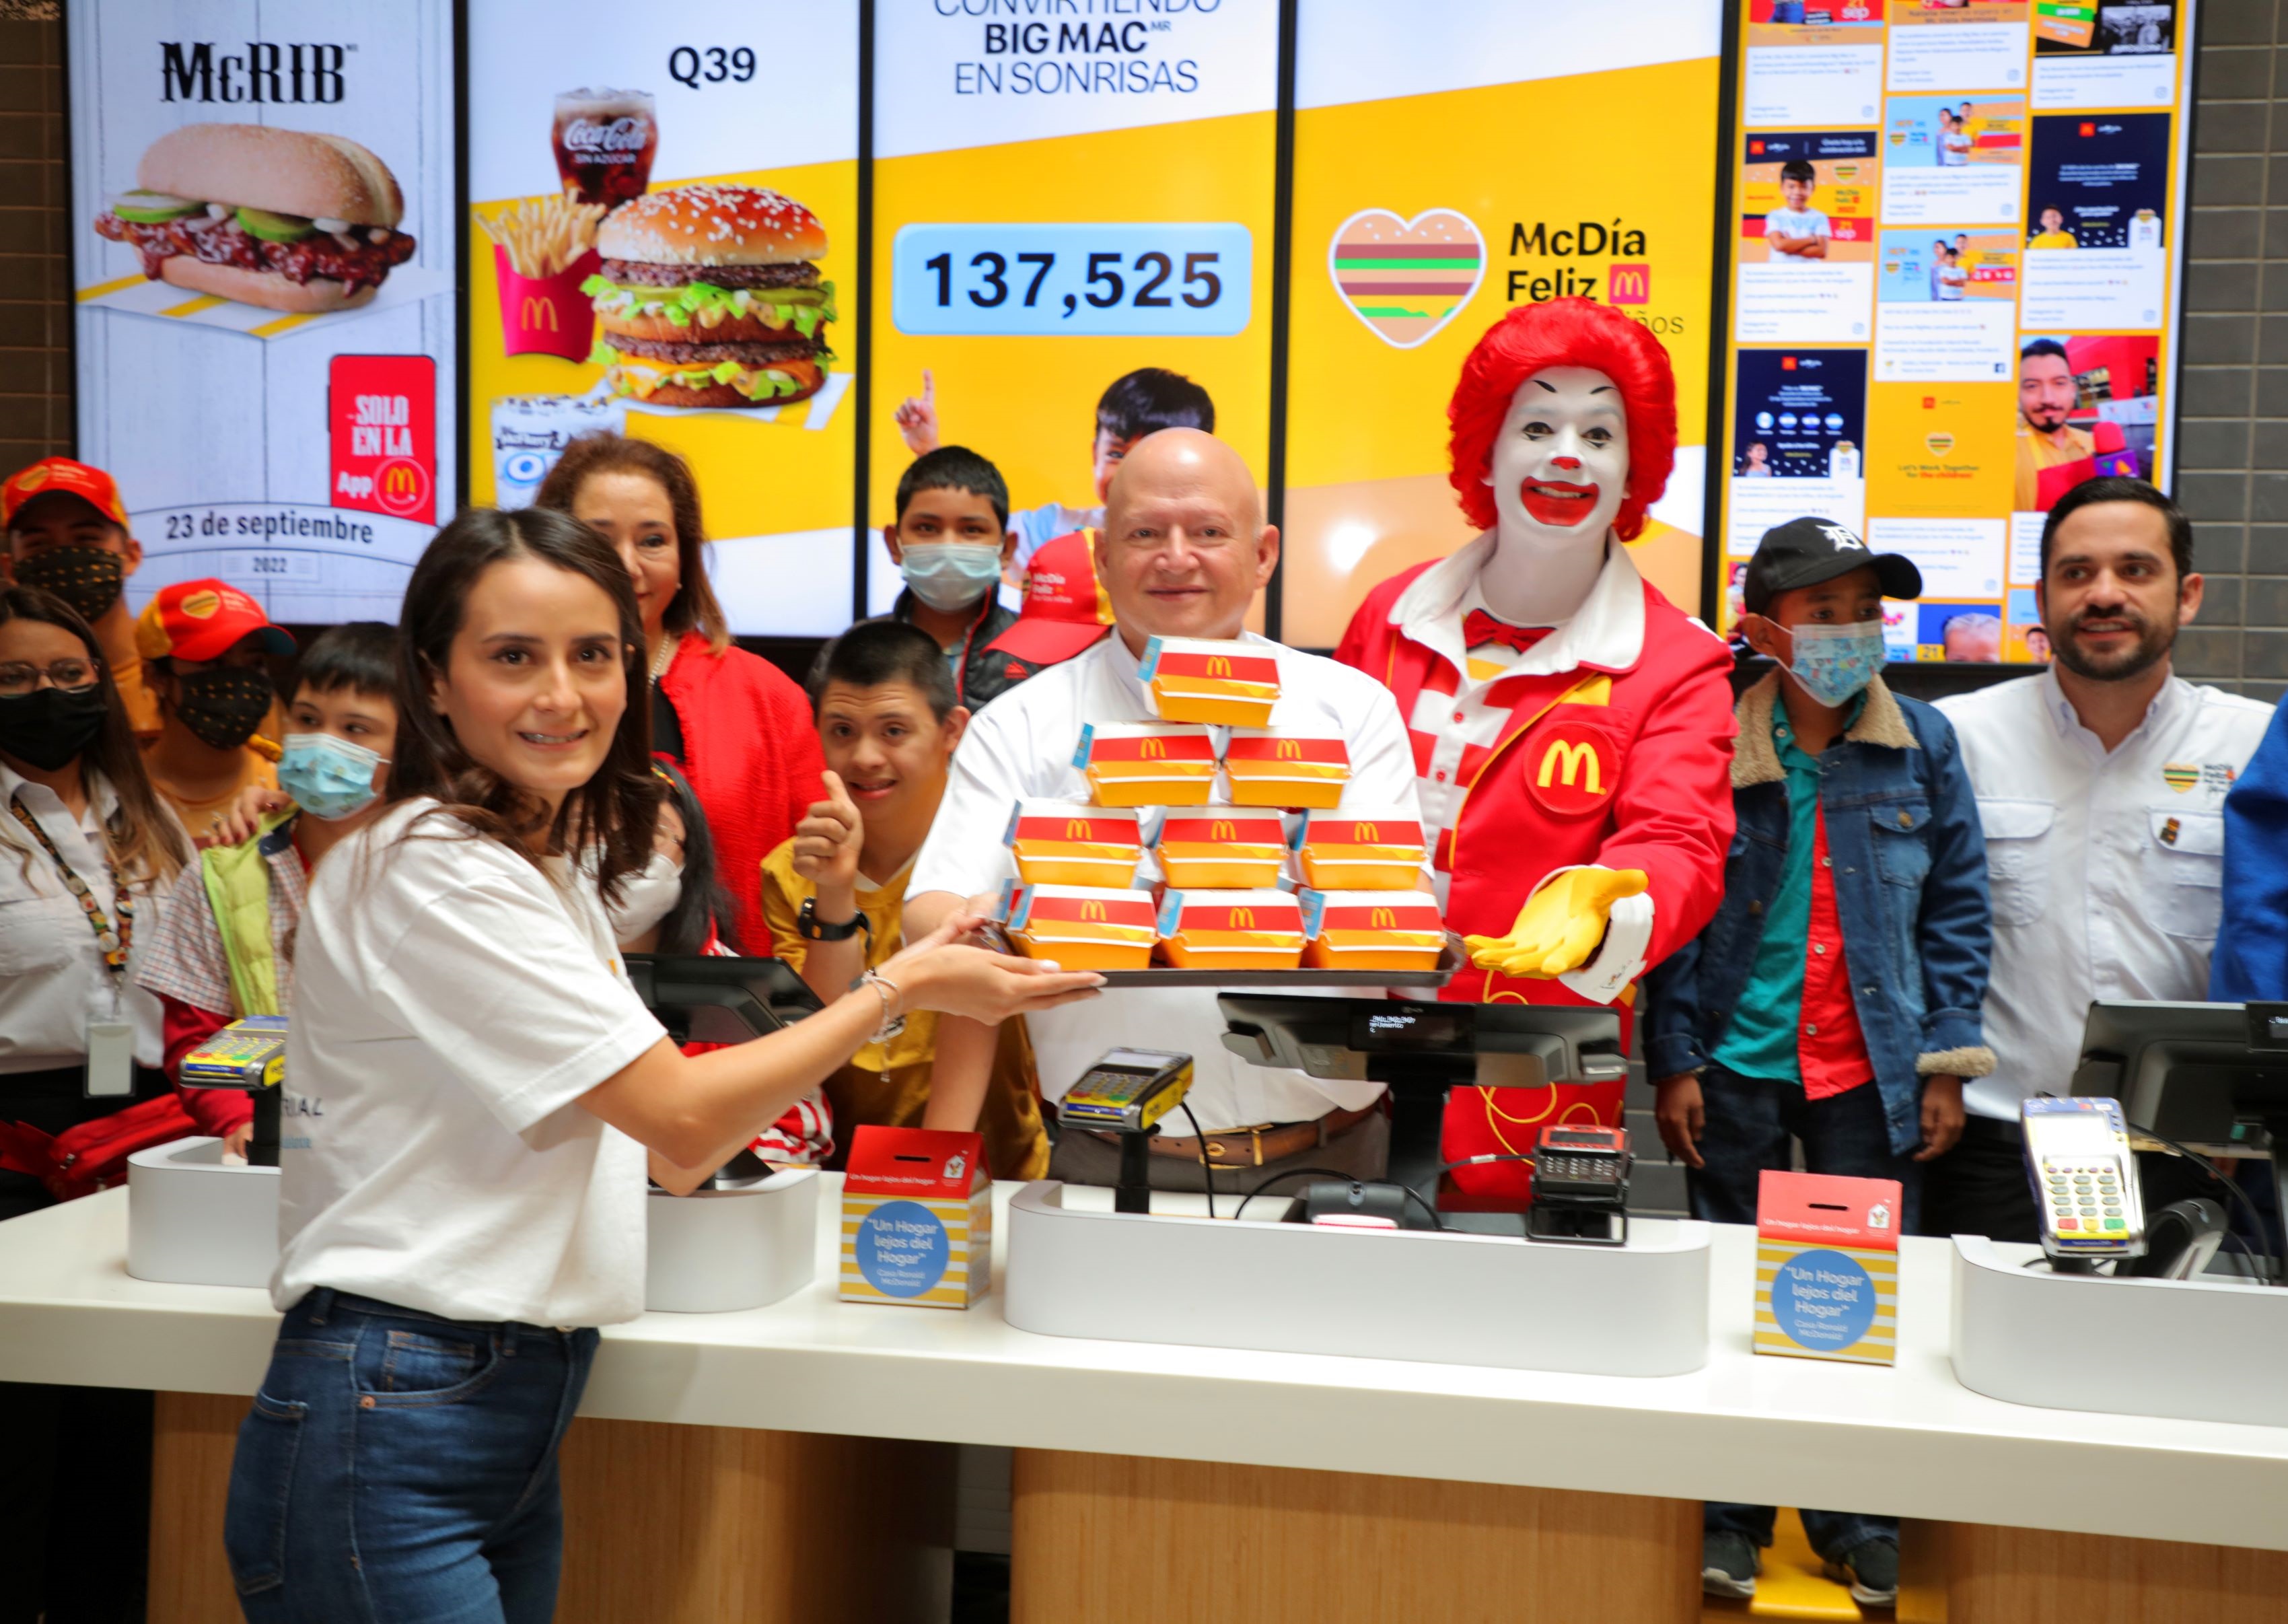 McDonald’s celebra el McDía Feliz 2022